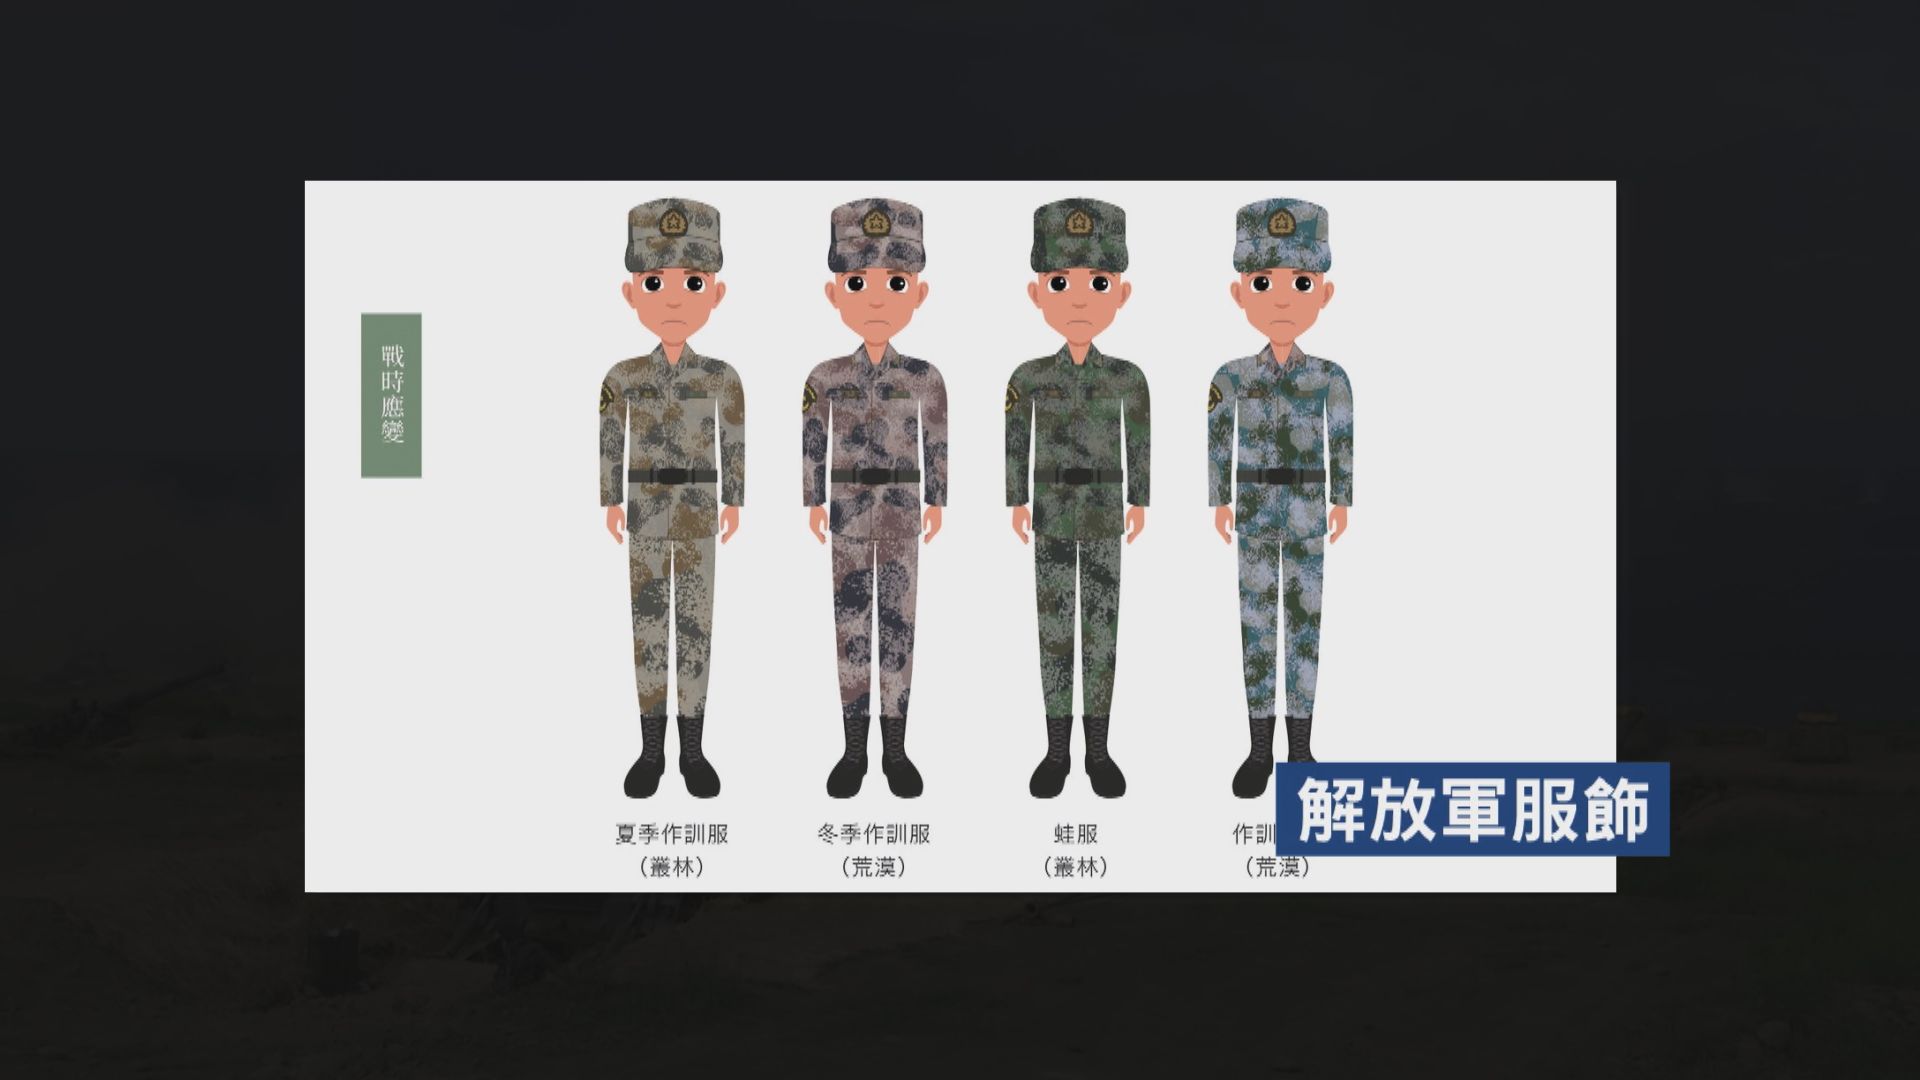 台灣修訂防務應變手冊 新納入解放軍服飾供參考